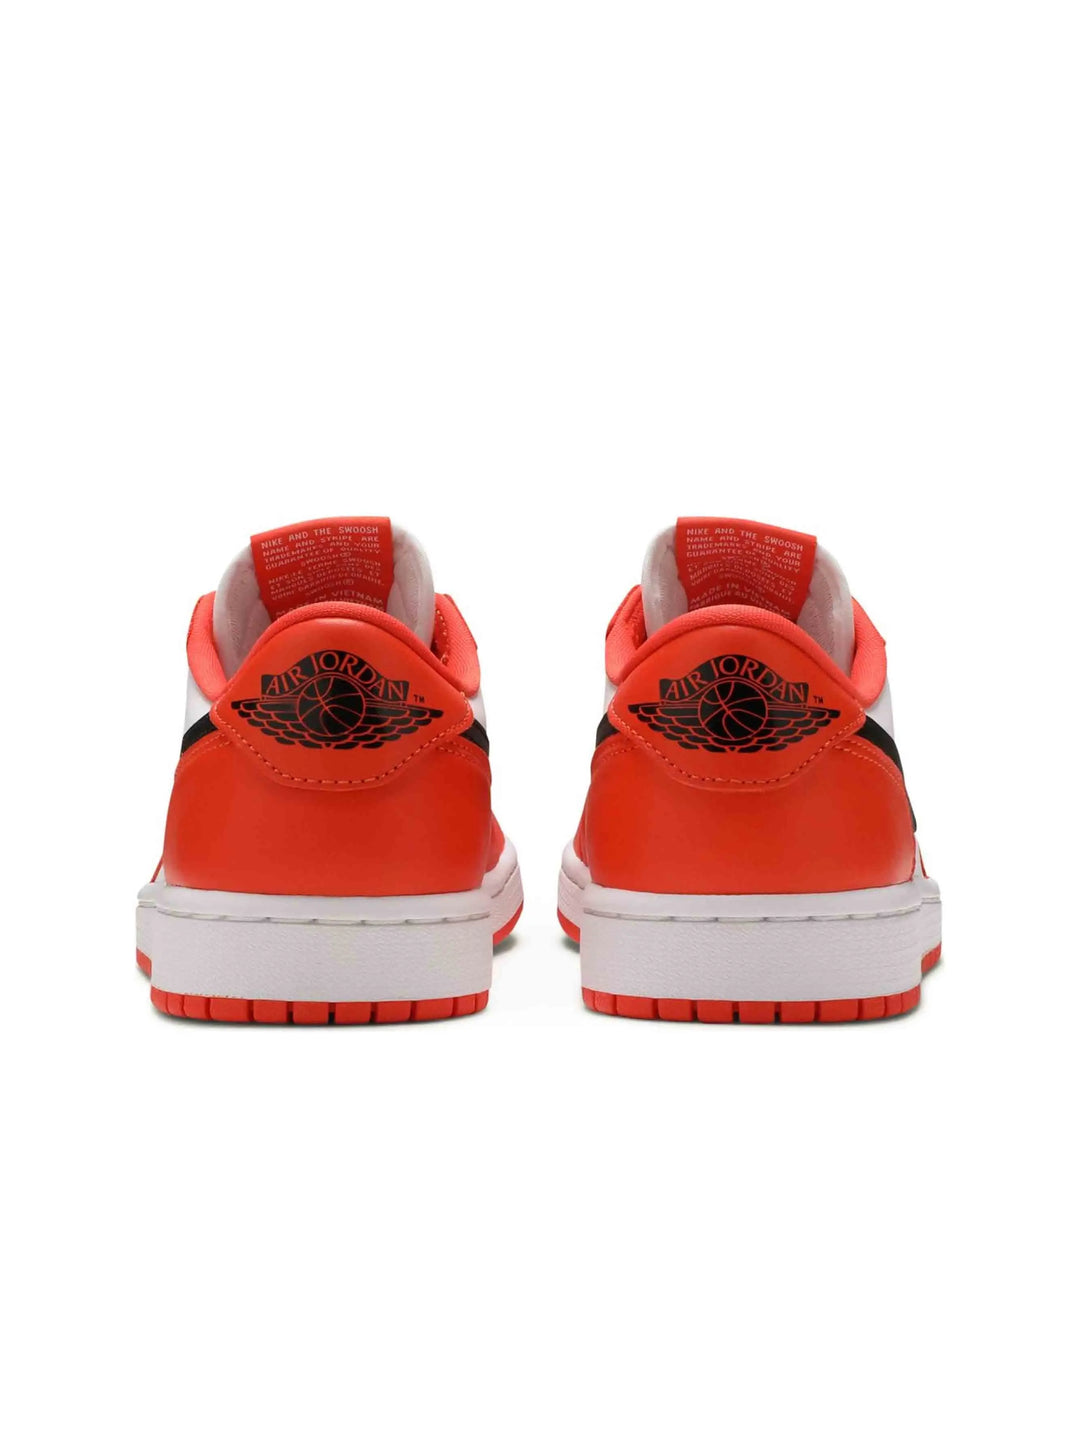 Nike Air Jordan 1 Low OG Starfish (W) Prior